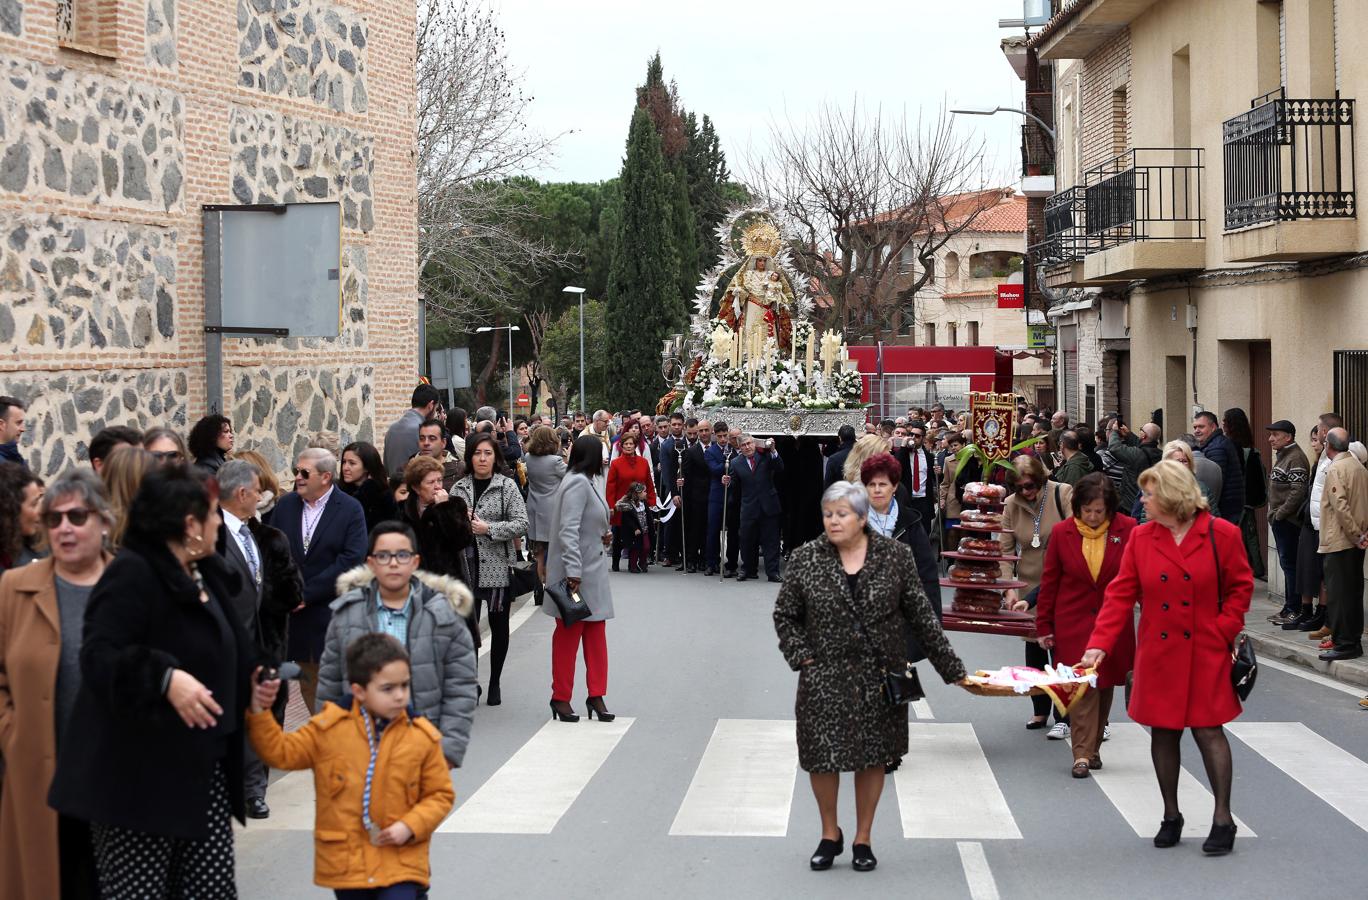 Las imágenes de la fiesta de la Virgen de La Candelaria en Toledo